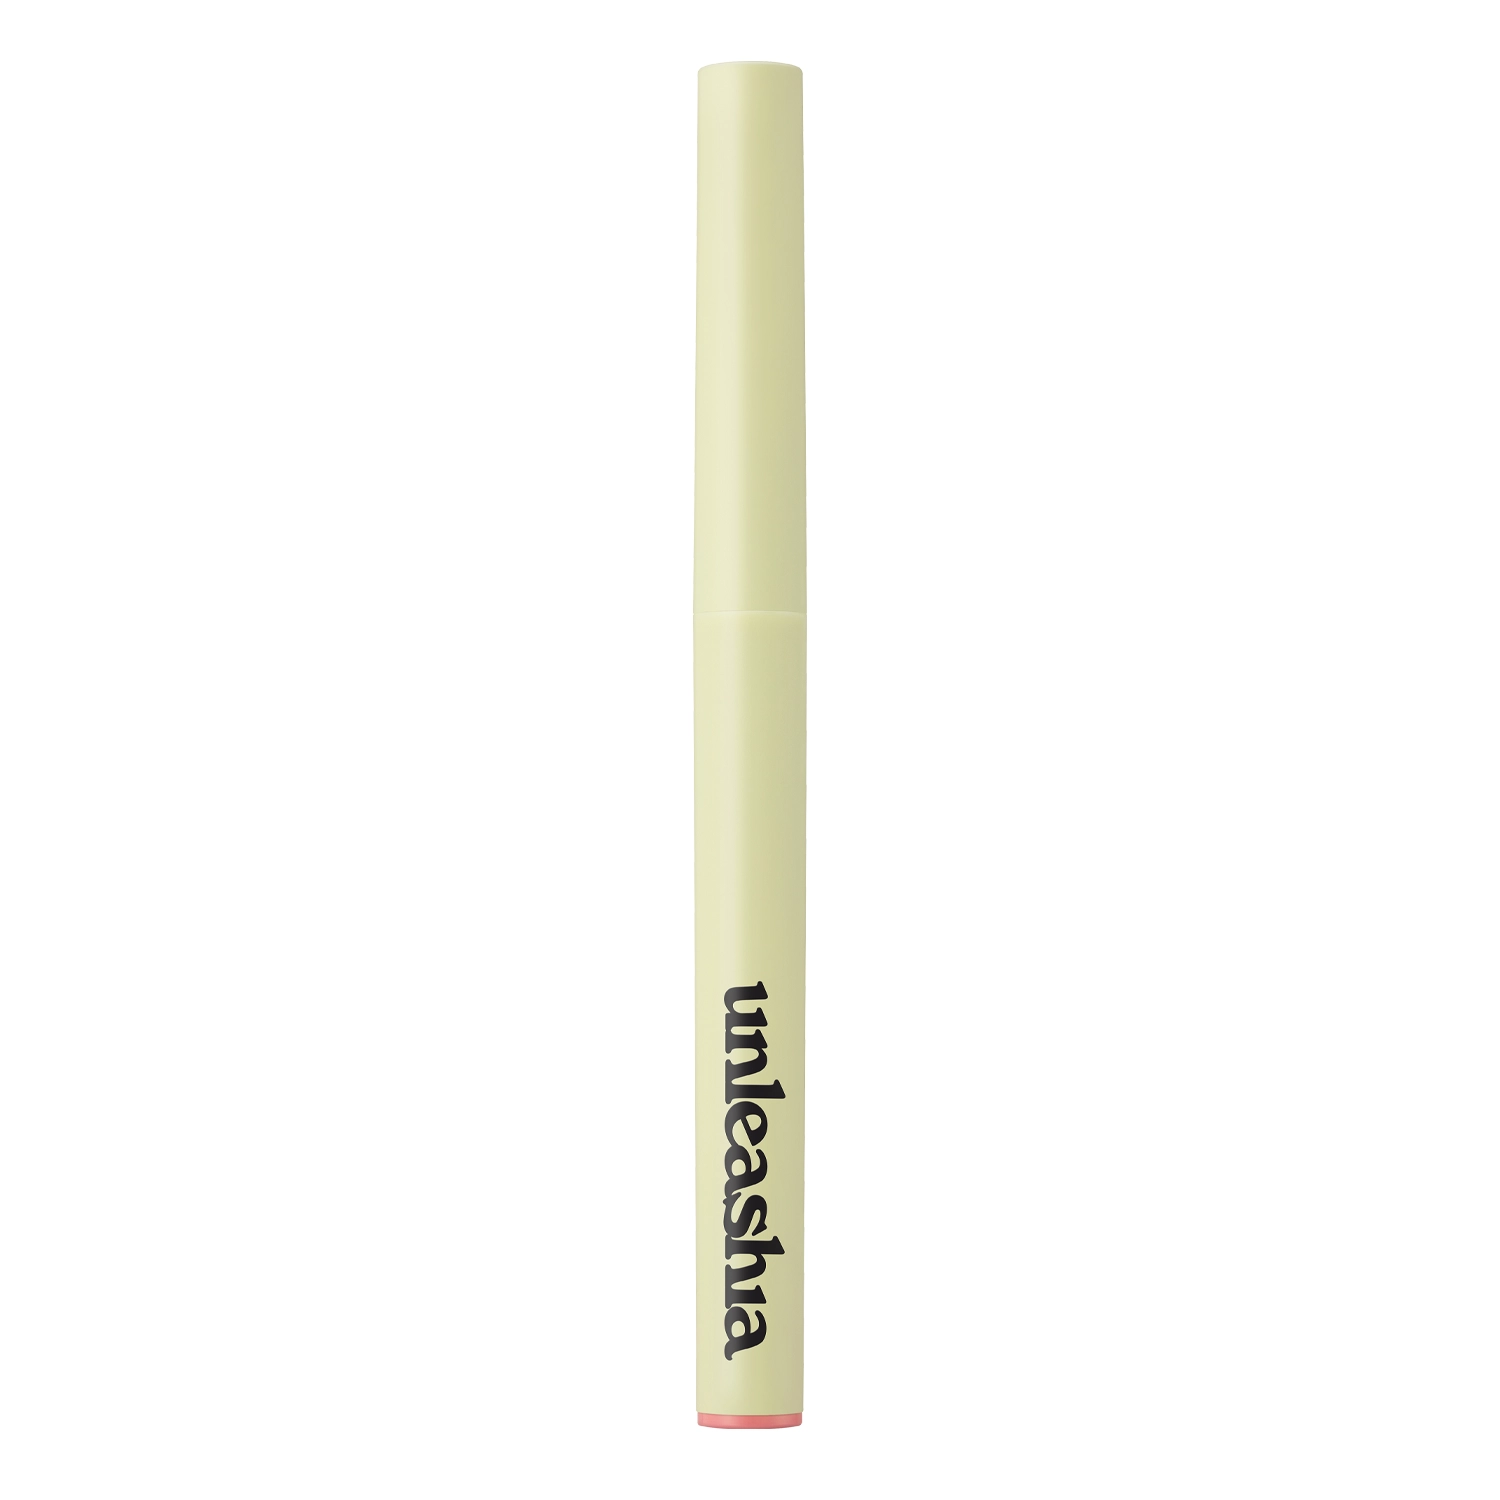 Unleashia - Oh! Happy Day Lip Pencil - Creion de buze - No. 2 Keep Smile - 0.7g